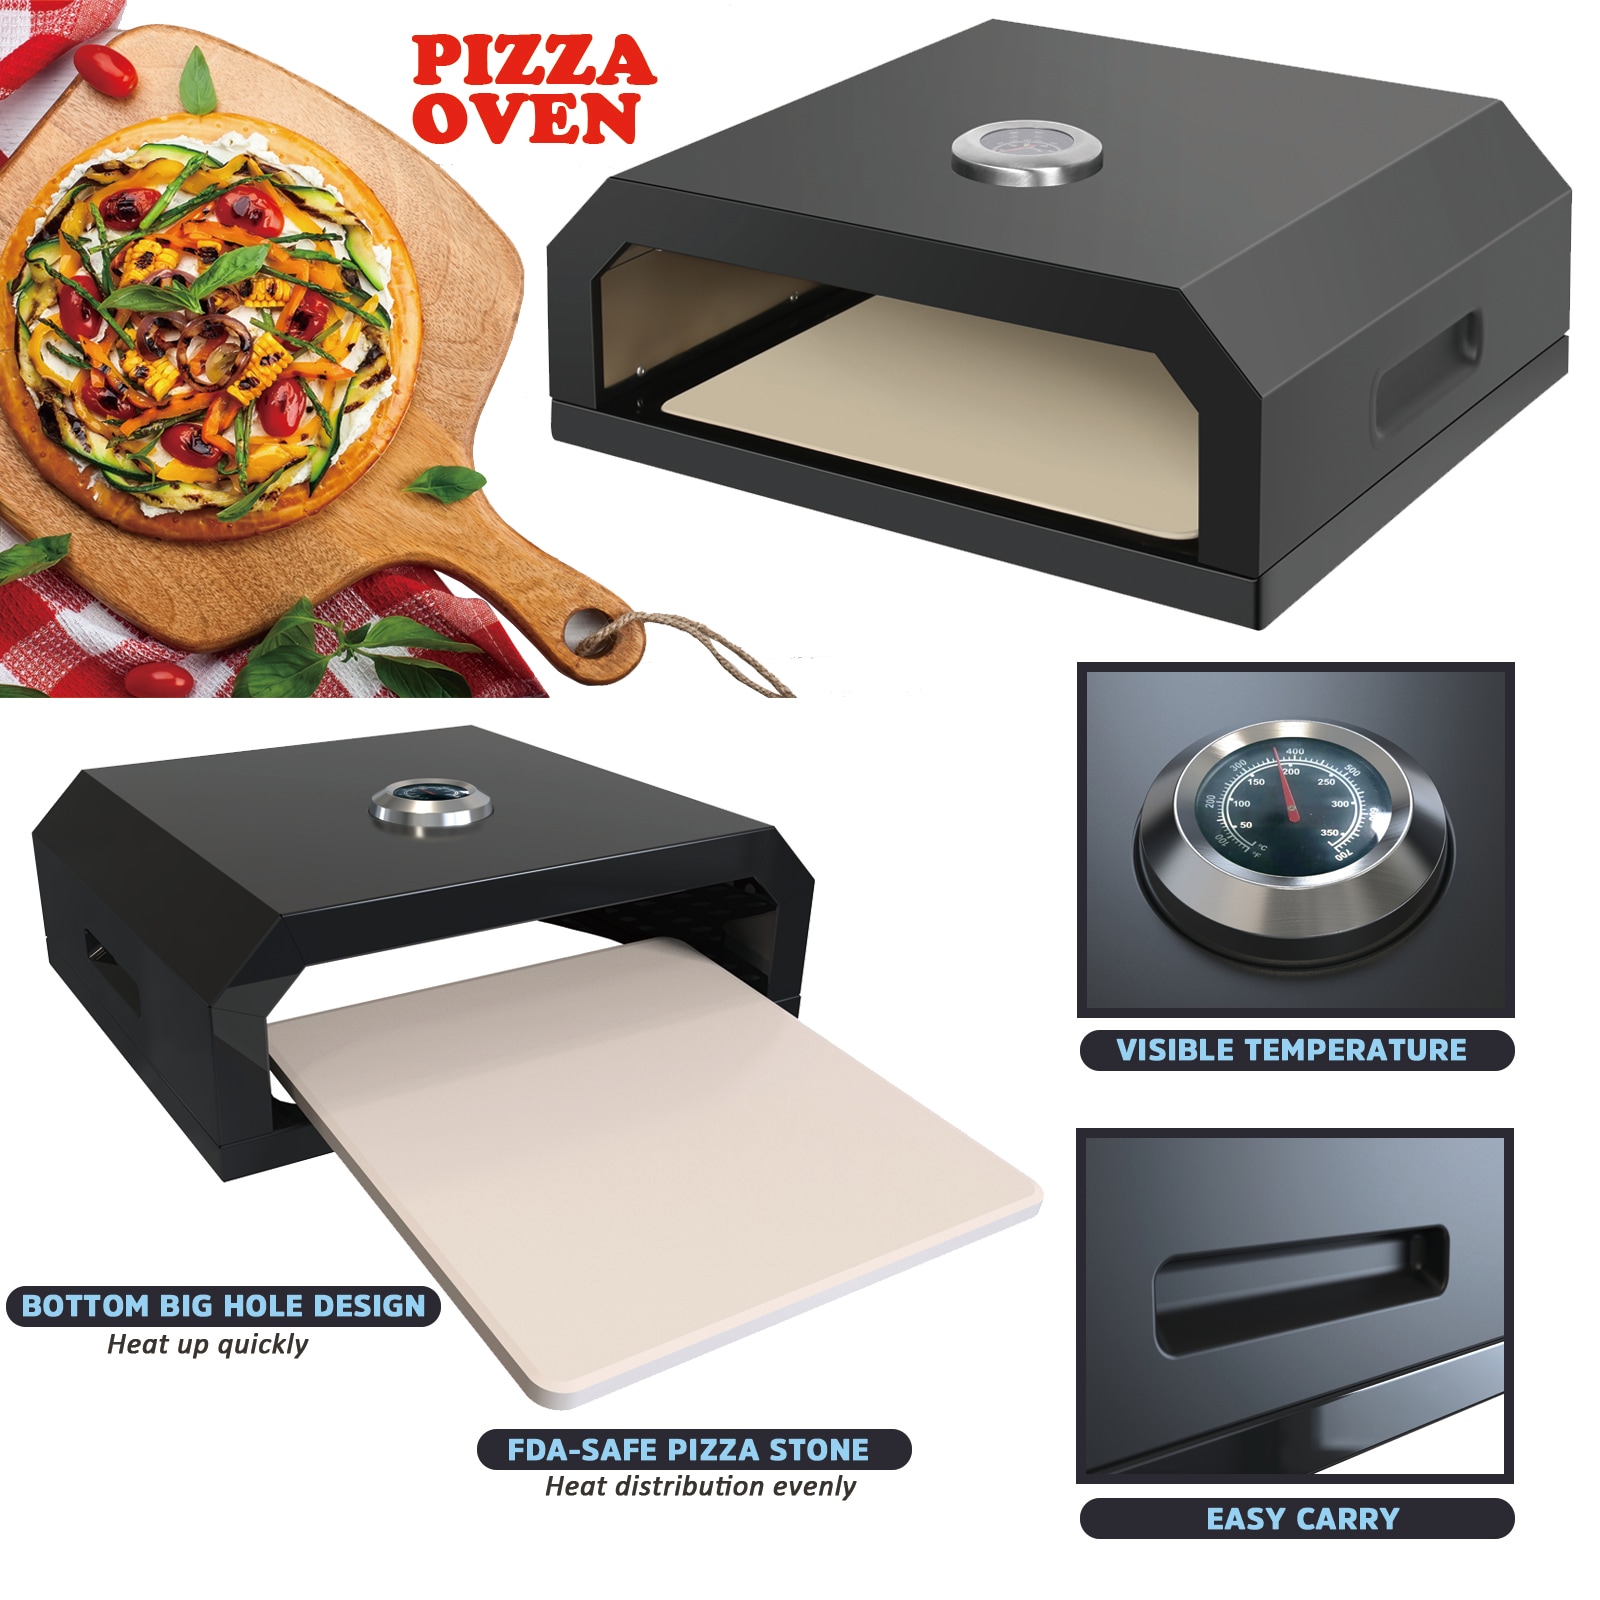 Ninja Woodfire 8-in-1 Outdoor Oven, Roaster, Pizza Oven & BBQ Smoker OO101